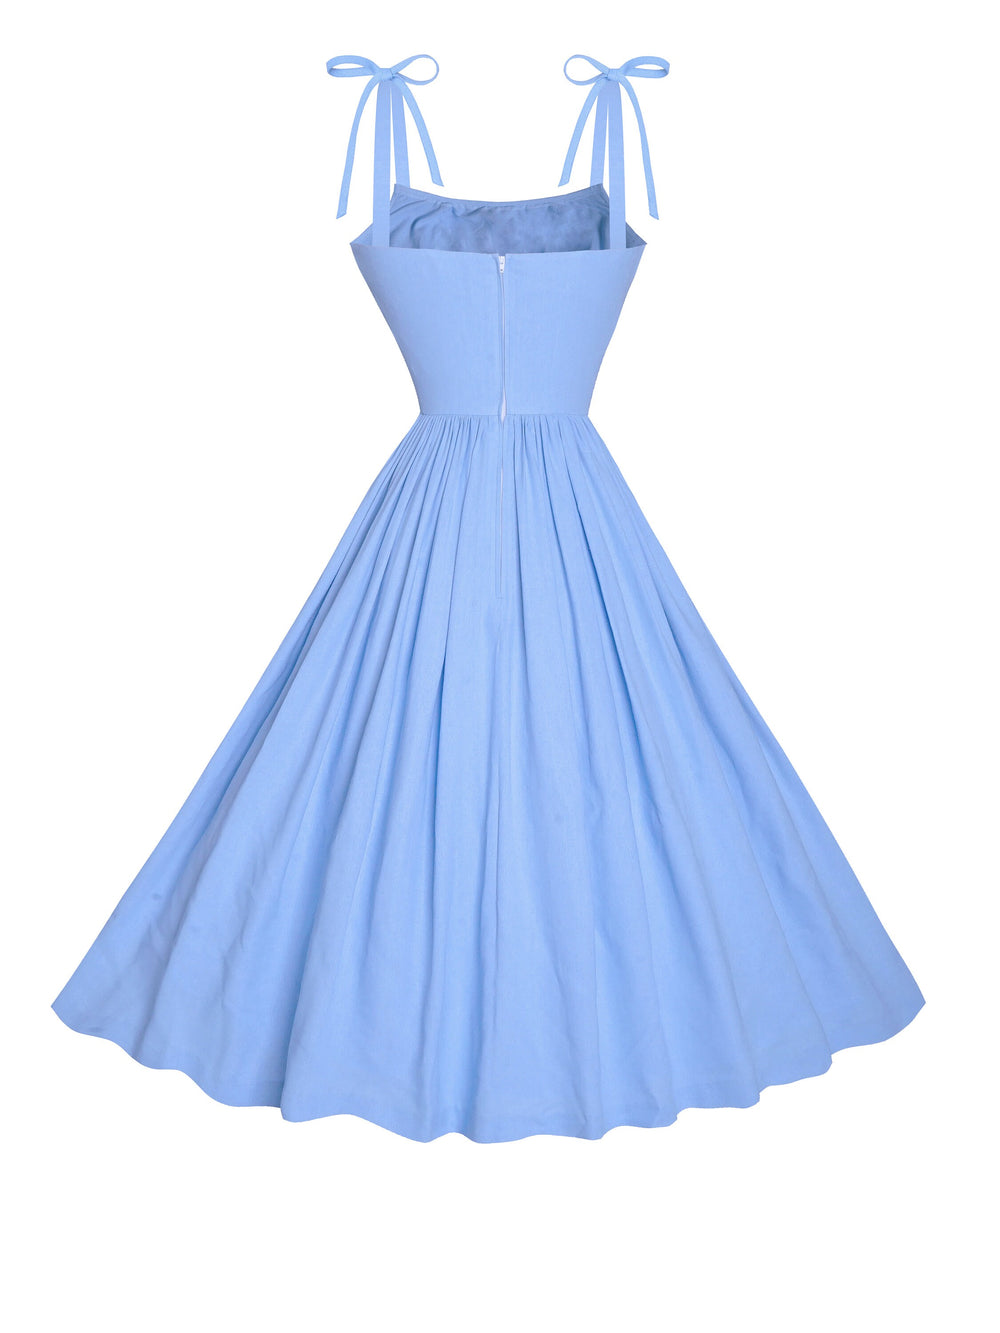 MTO - Kelly Dress in Powder Blue Linen